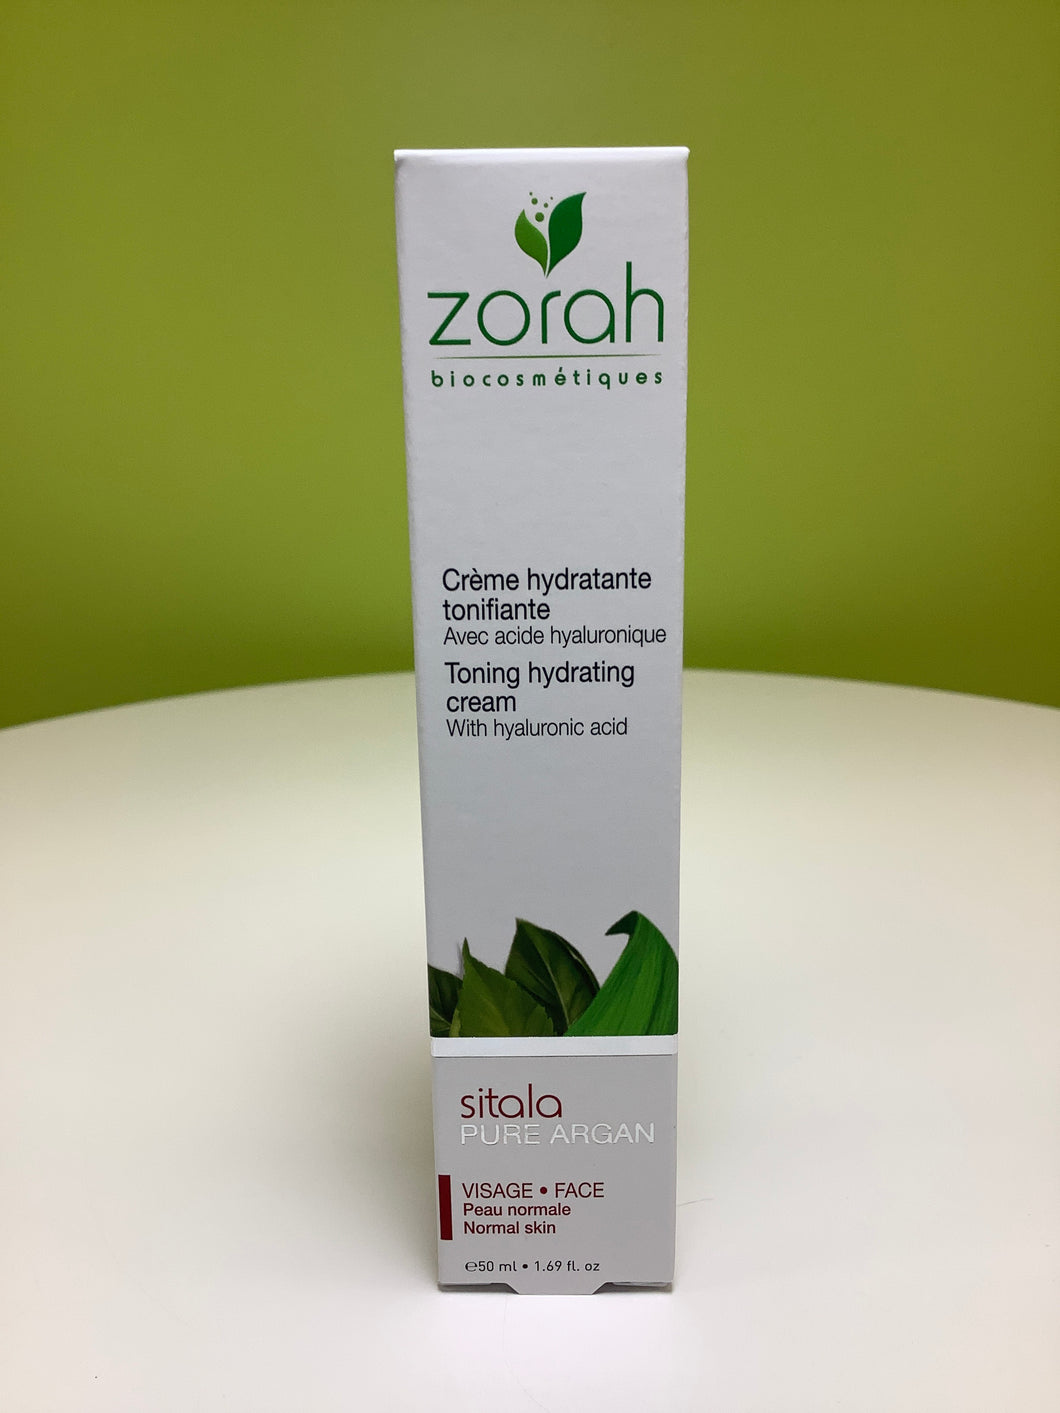 Zorah Biocosmetiques Sitala Toning Hydrating Cream